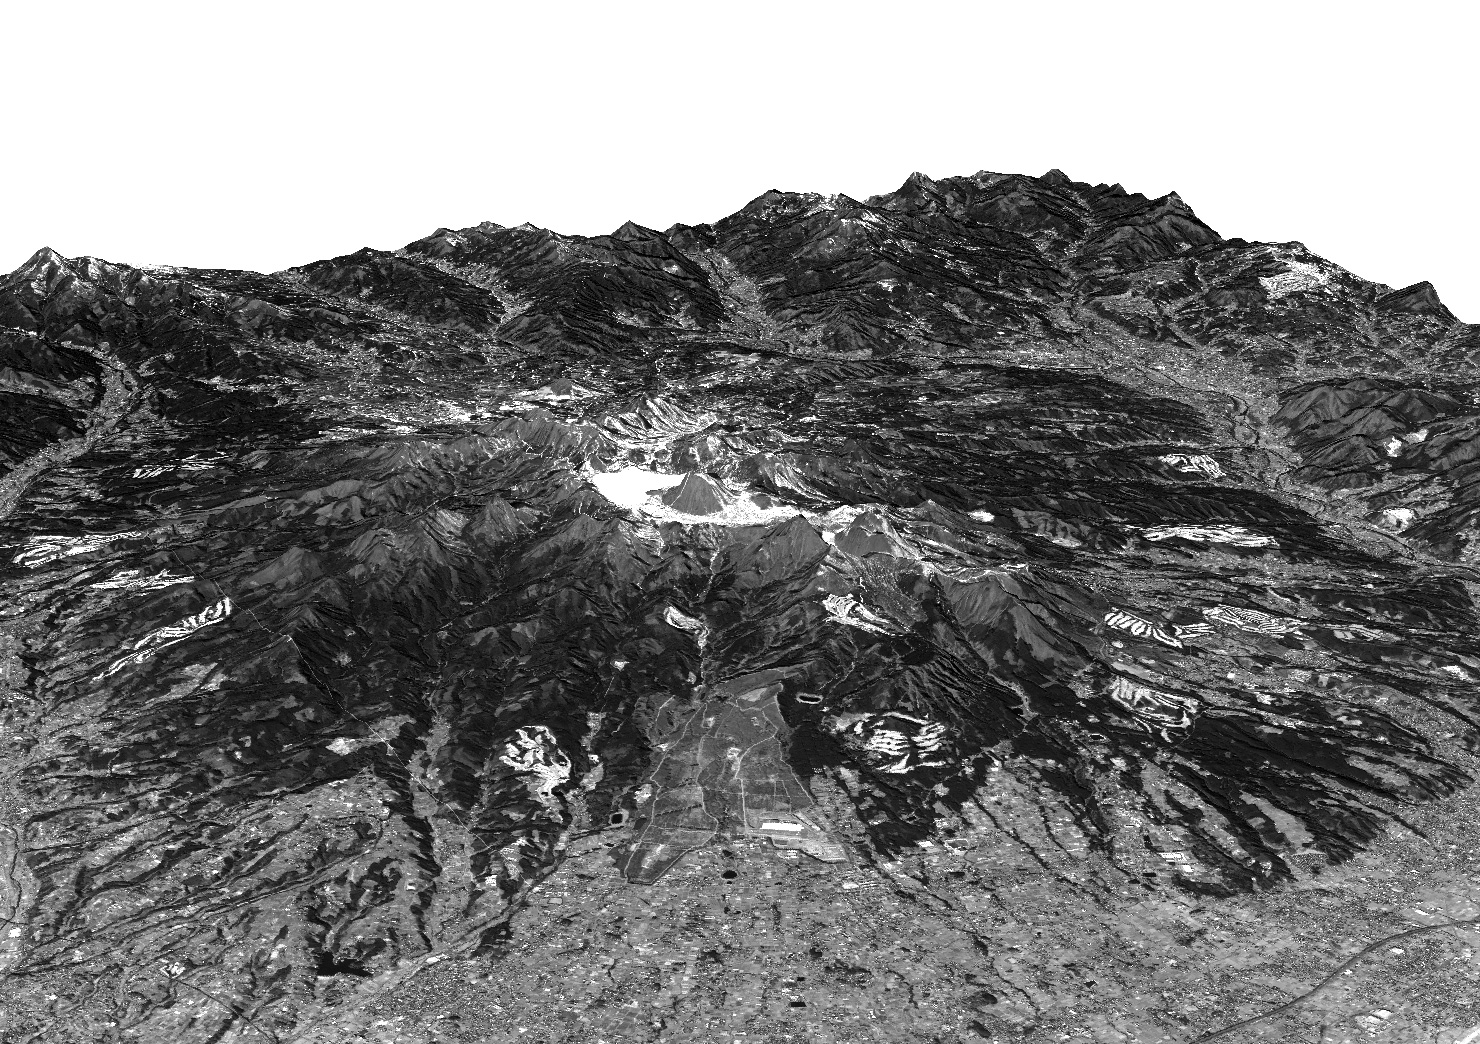 図1: 2006年2月14日に陸域観測技術衛星「だいち」(ALOS)パンクロマチック立体視センサ(PRISM)が観測した榛名山